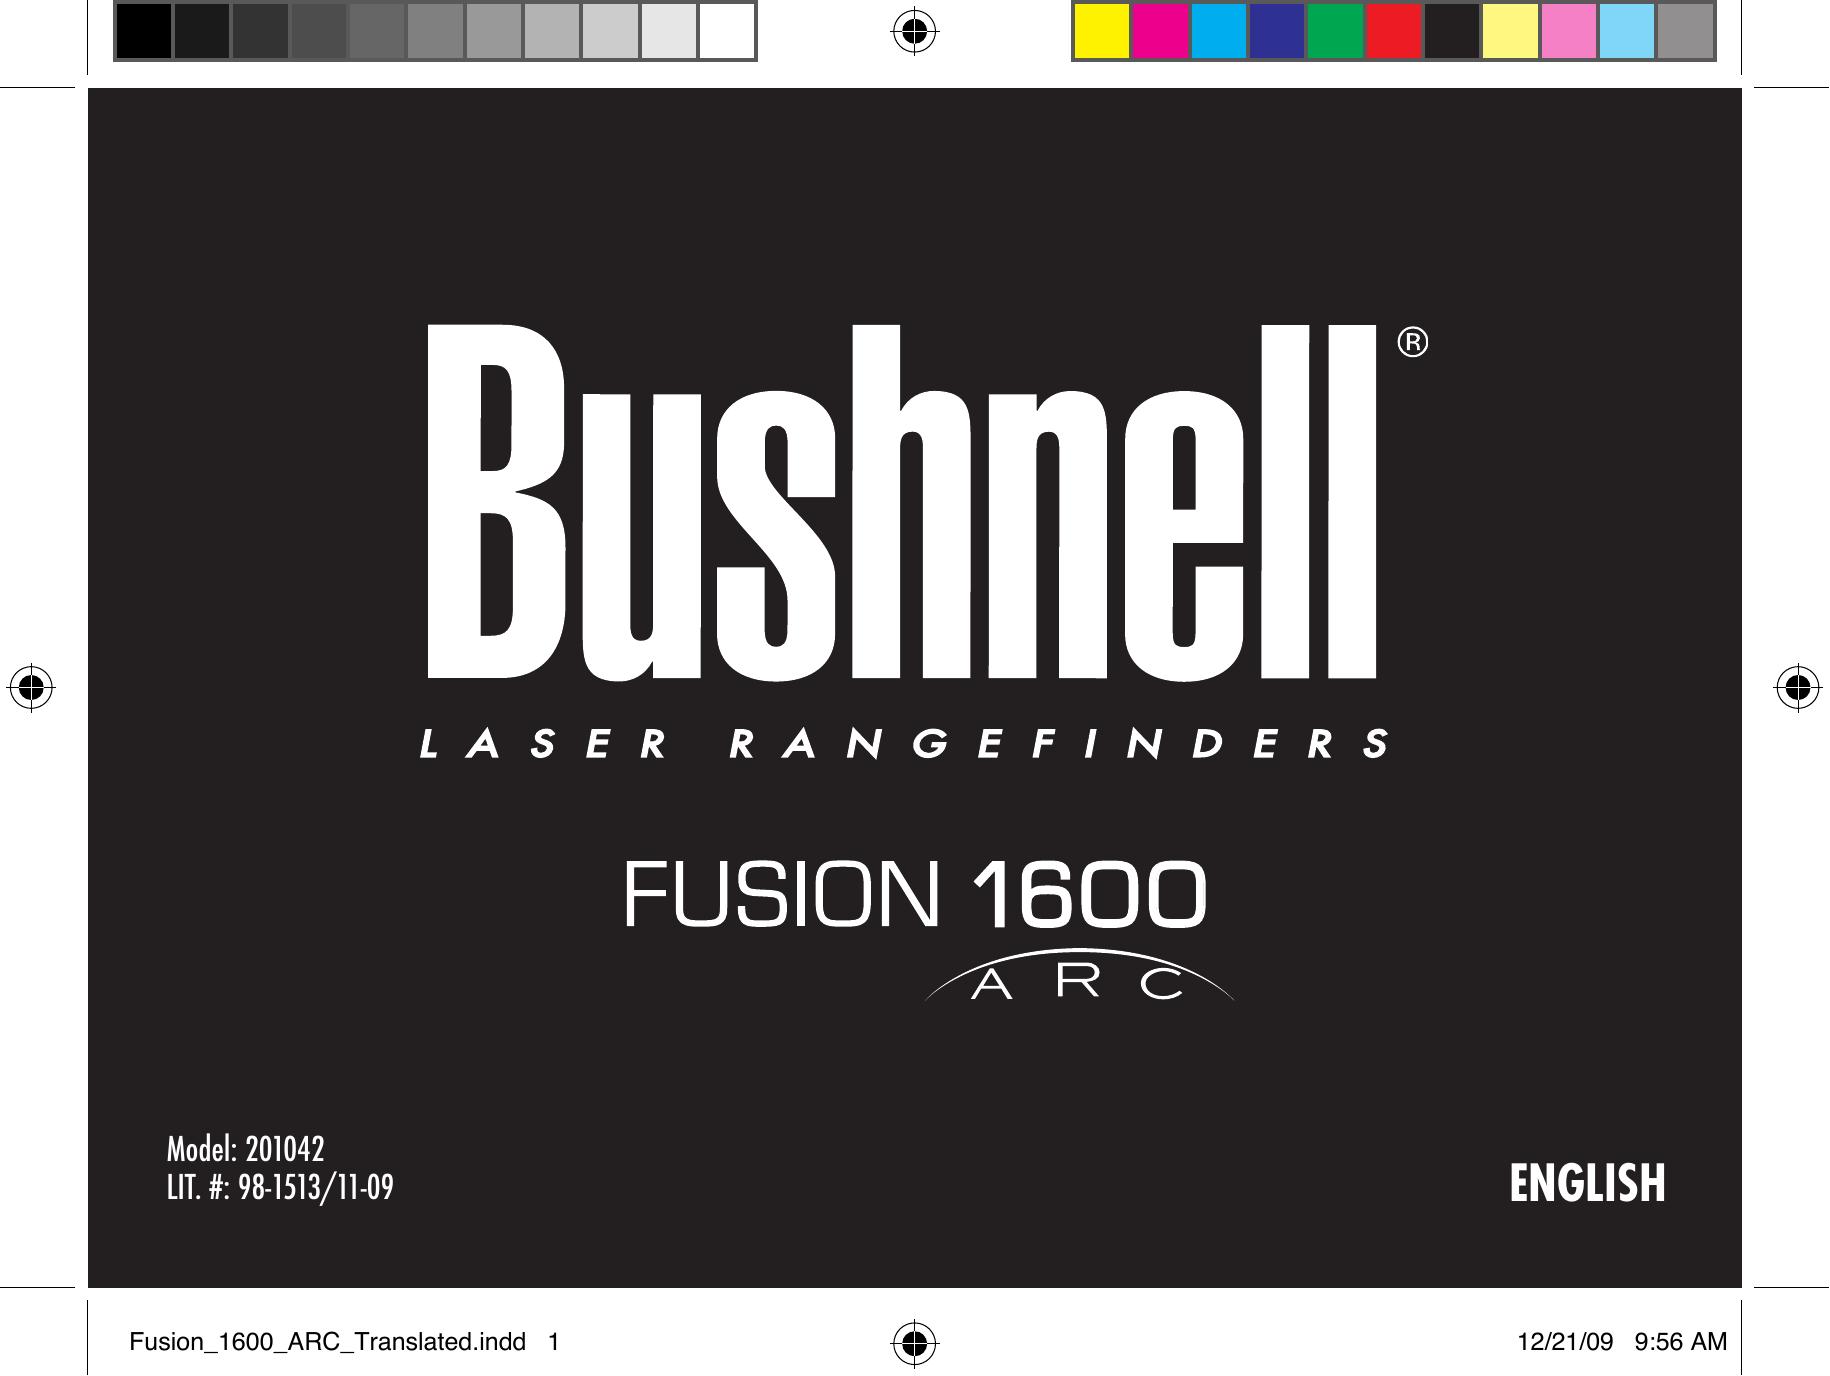 Bushnell 201042 Film Camera User Manual